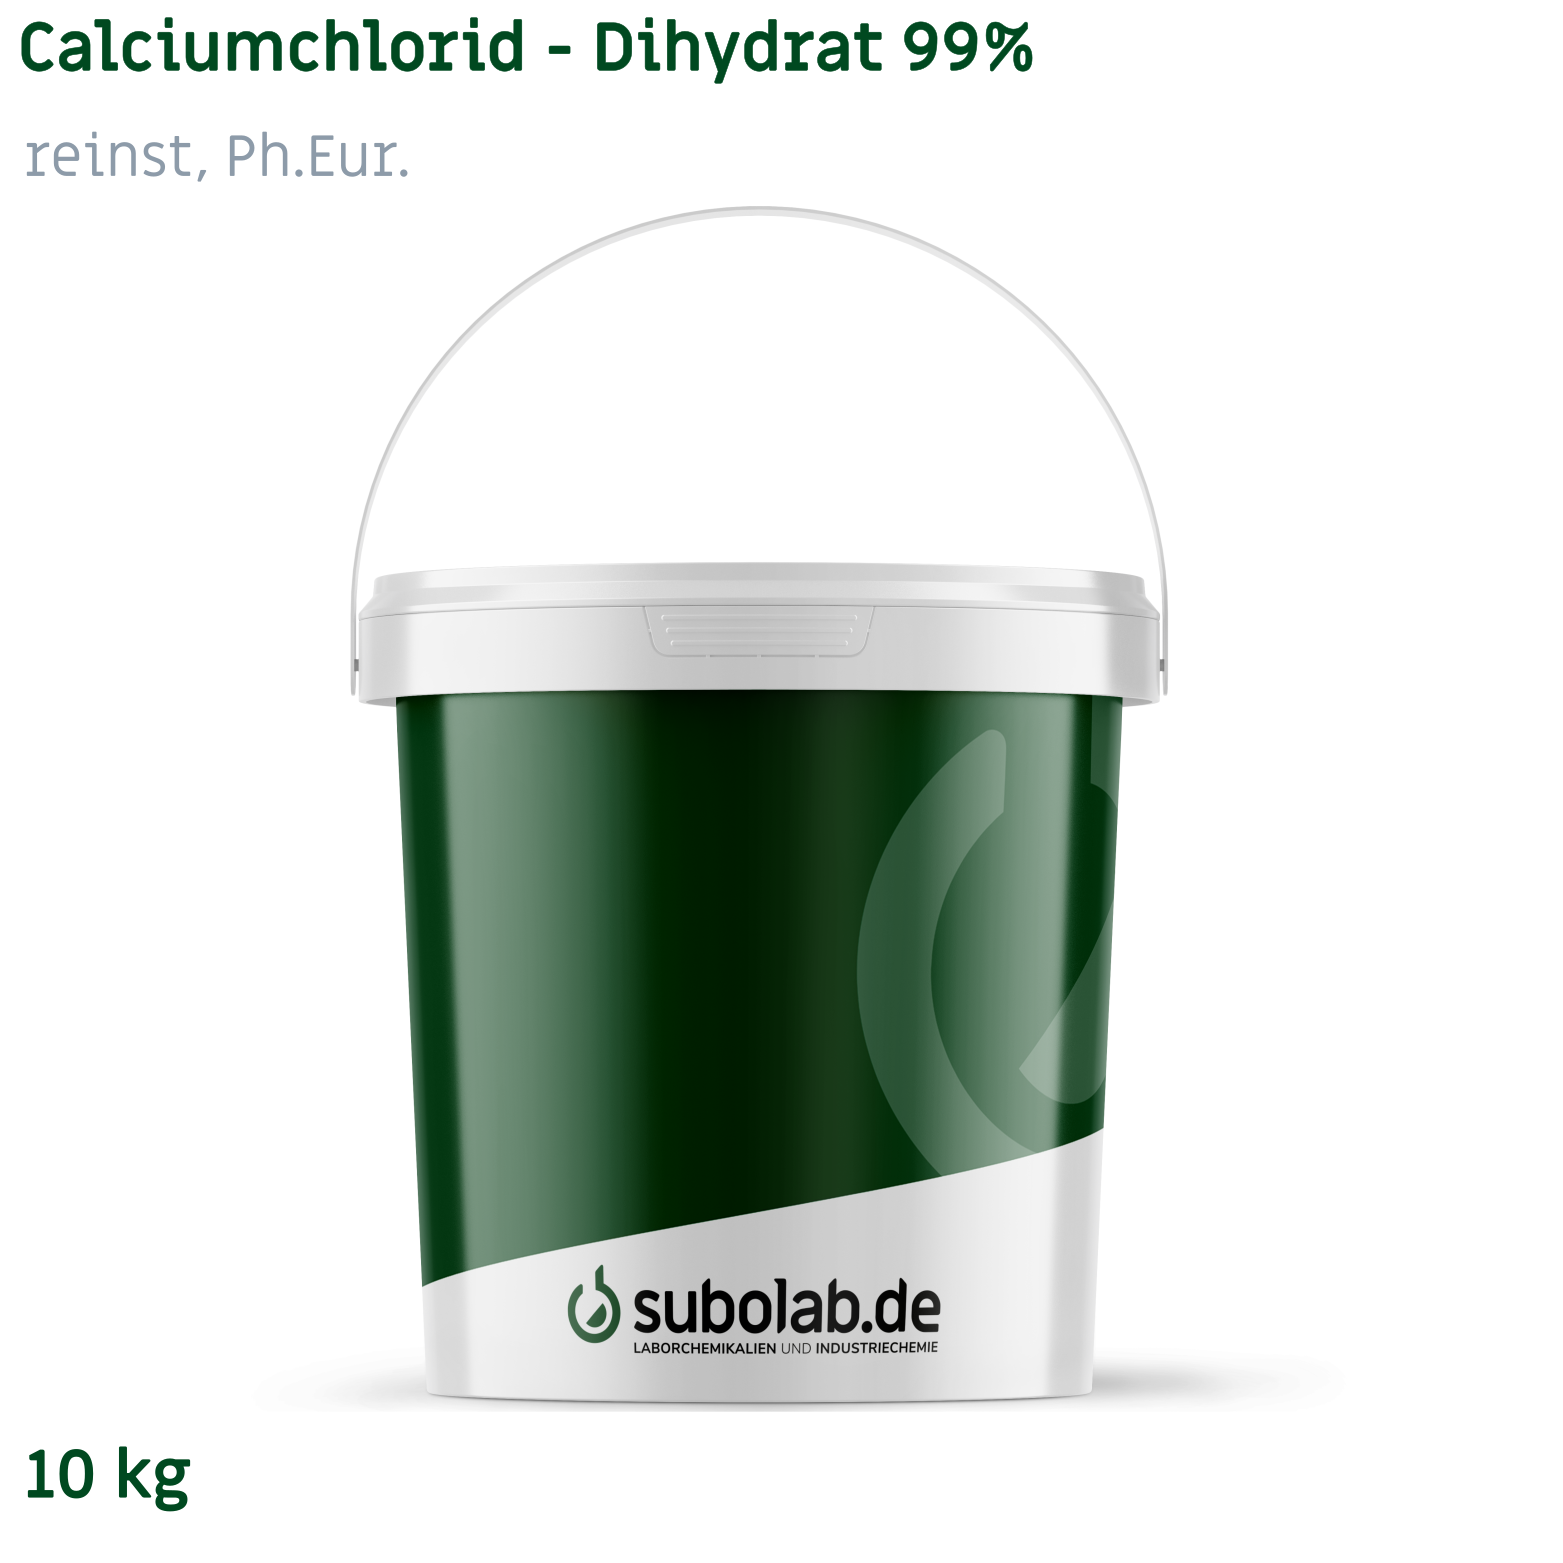 Bild von Calciumchlorid - Dihydrat 99% reinst, Ph.Eur. (10 kg)